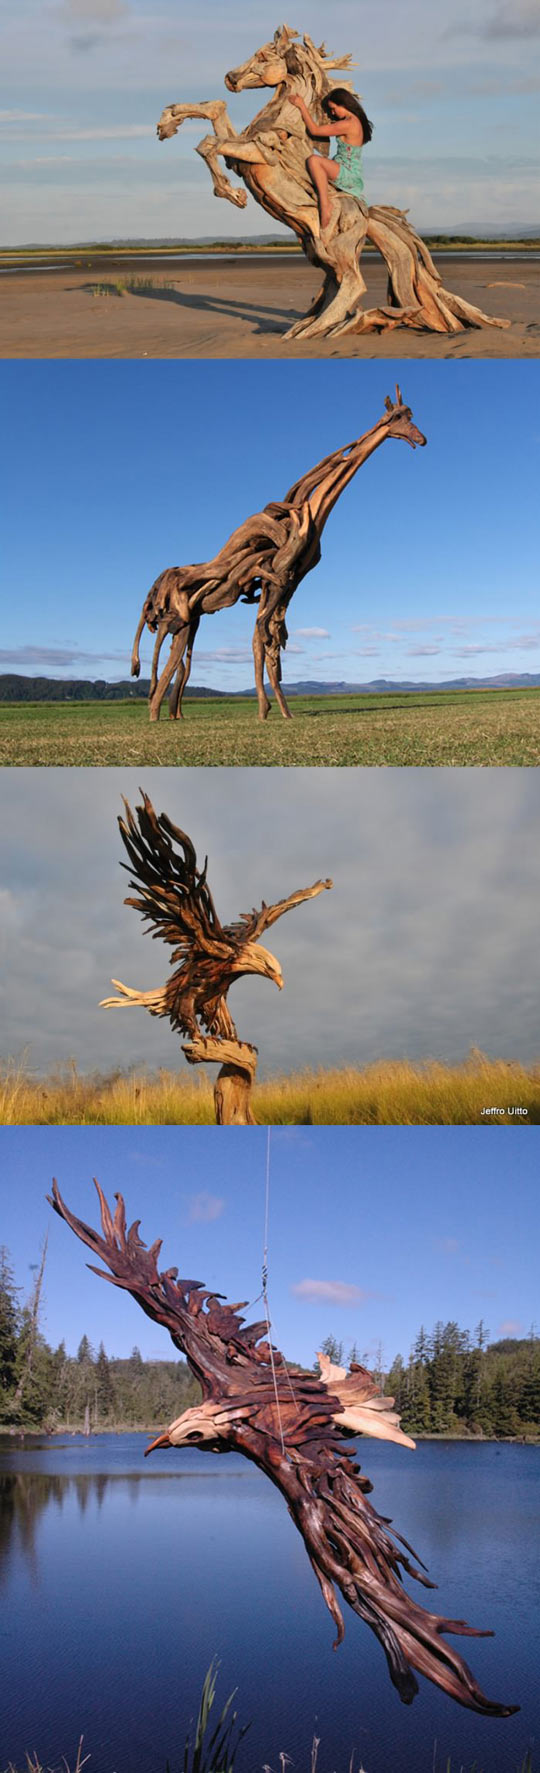 Amazing wooden sculptures.